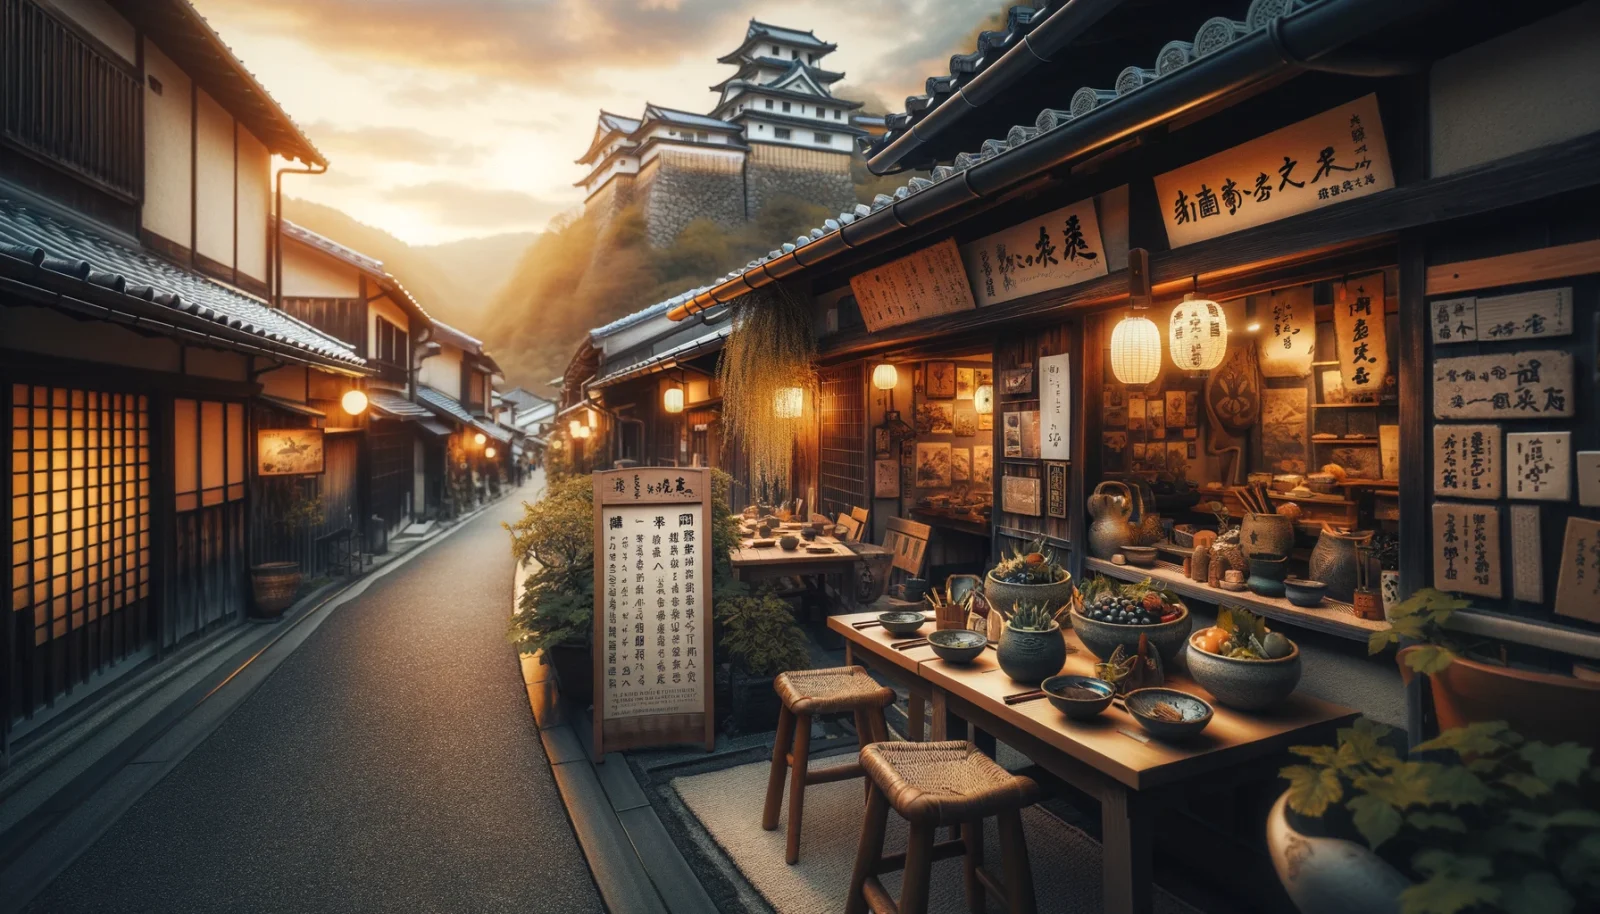 歴史ある城下町の風情を残す丹波篠山の路地にひっそりと佇む隠れ家レストラン。地元の特産品を生かした料理が並び、旅人を誘う光景。